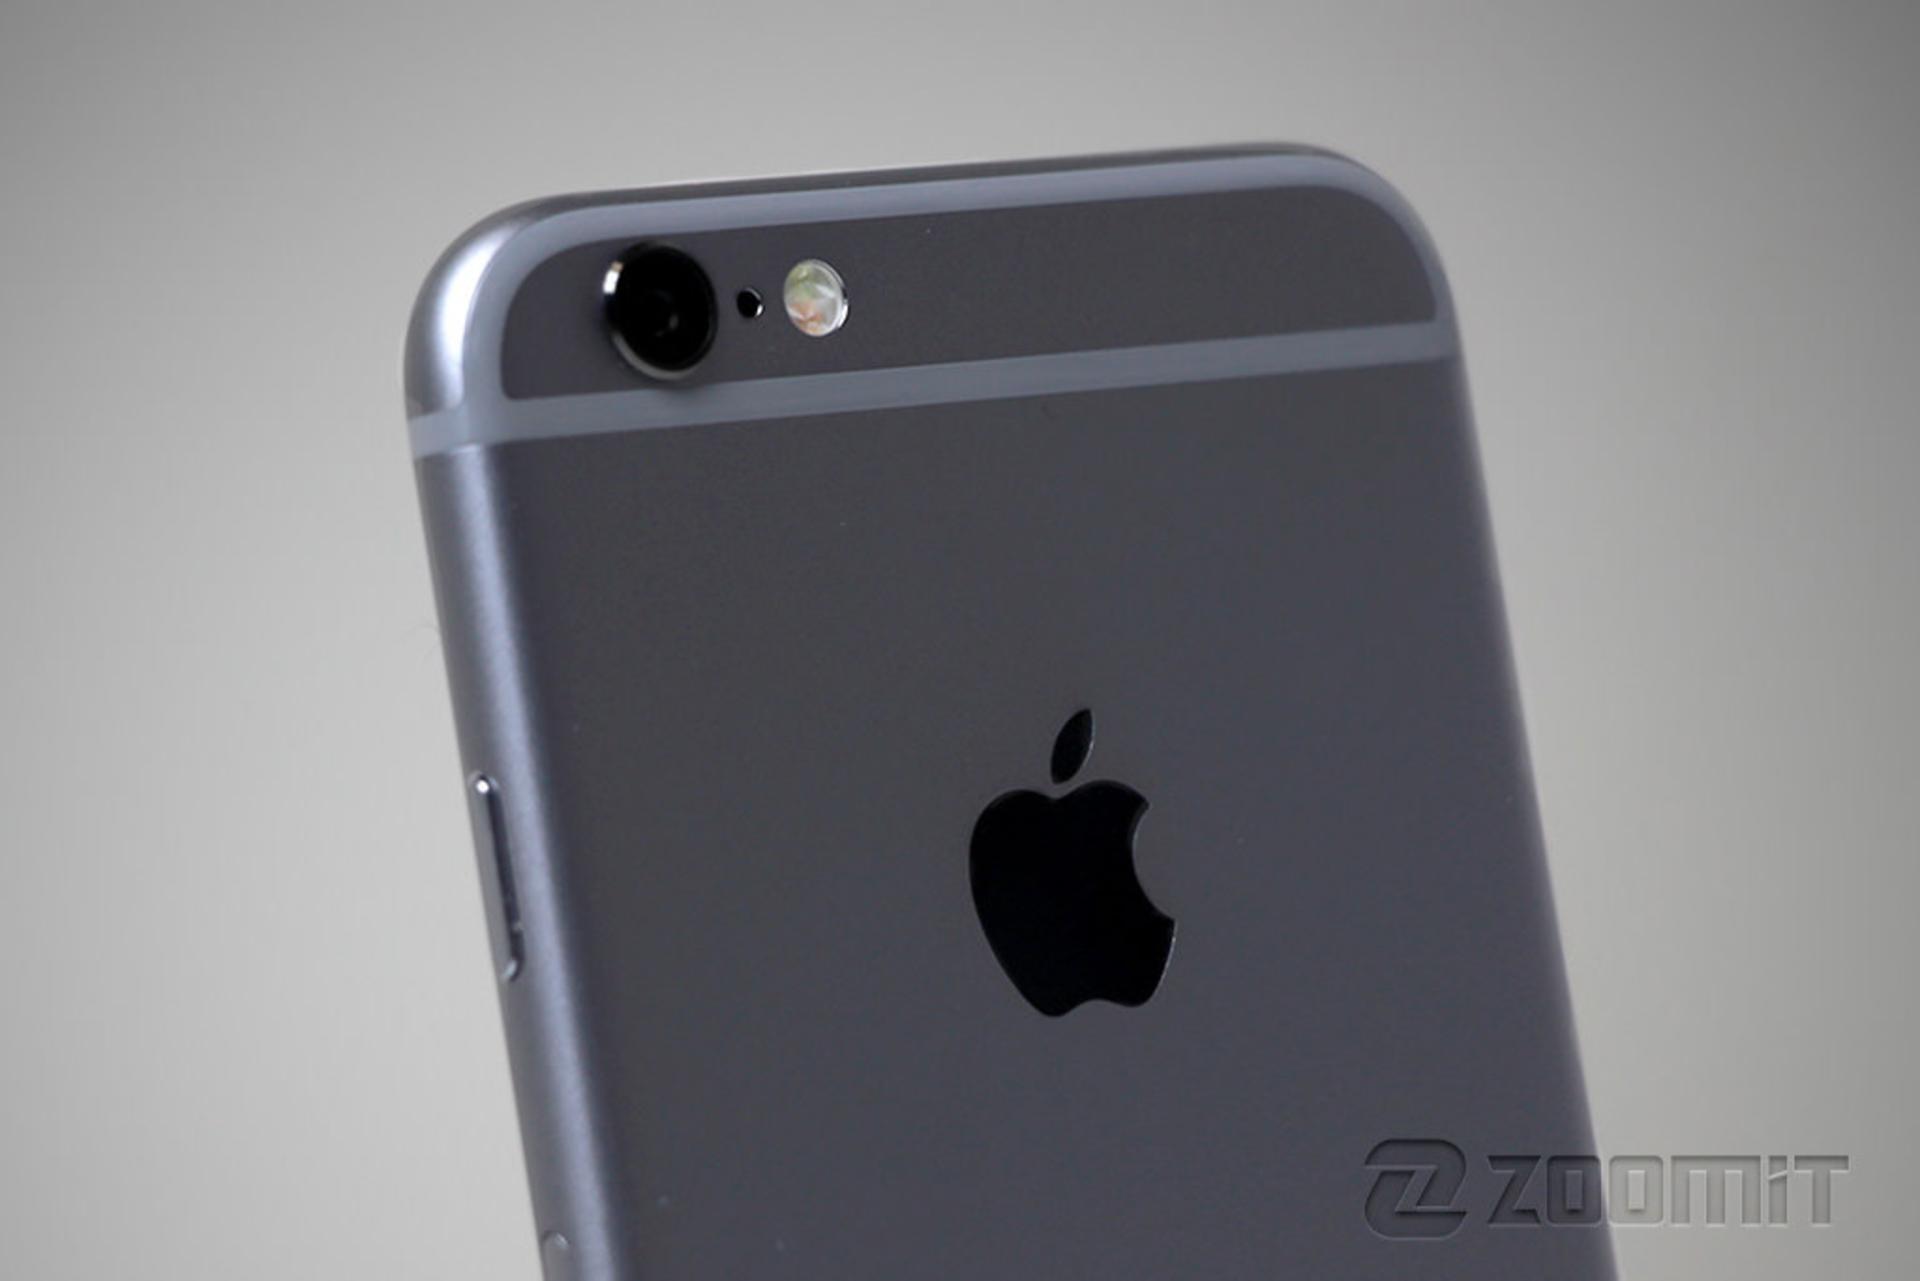 مرجع متخصصين ايران اپل آيفون 6 / Apple iPhone 6